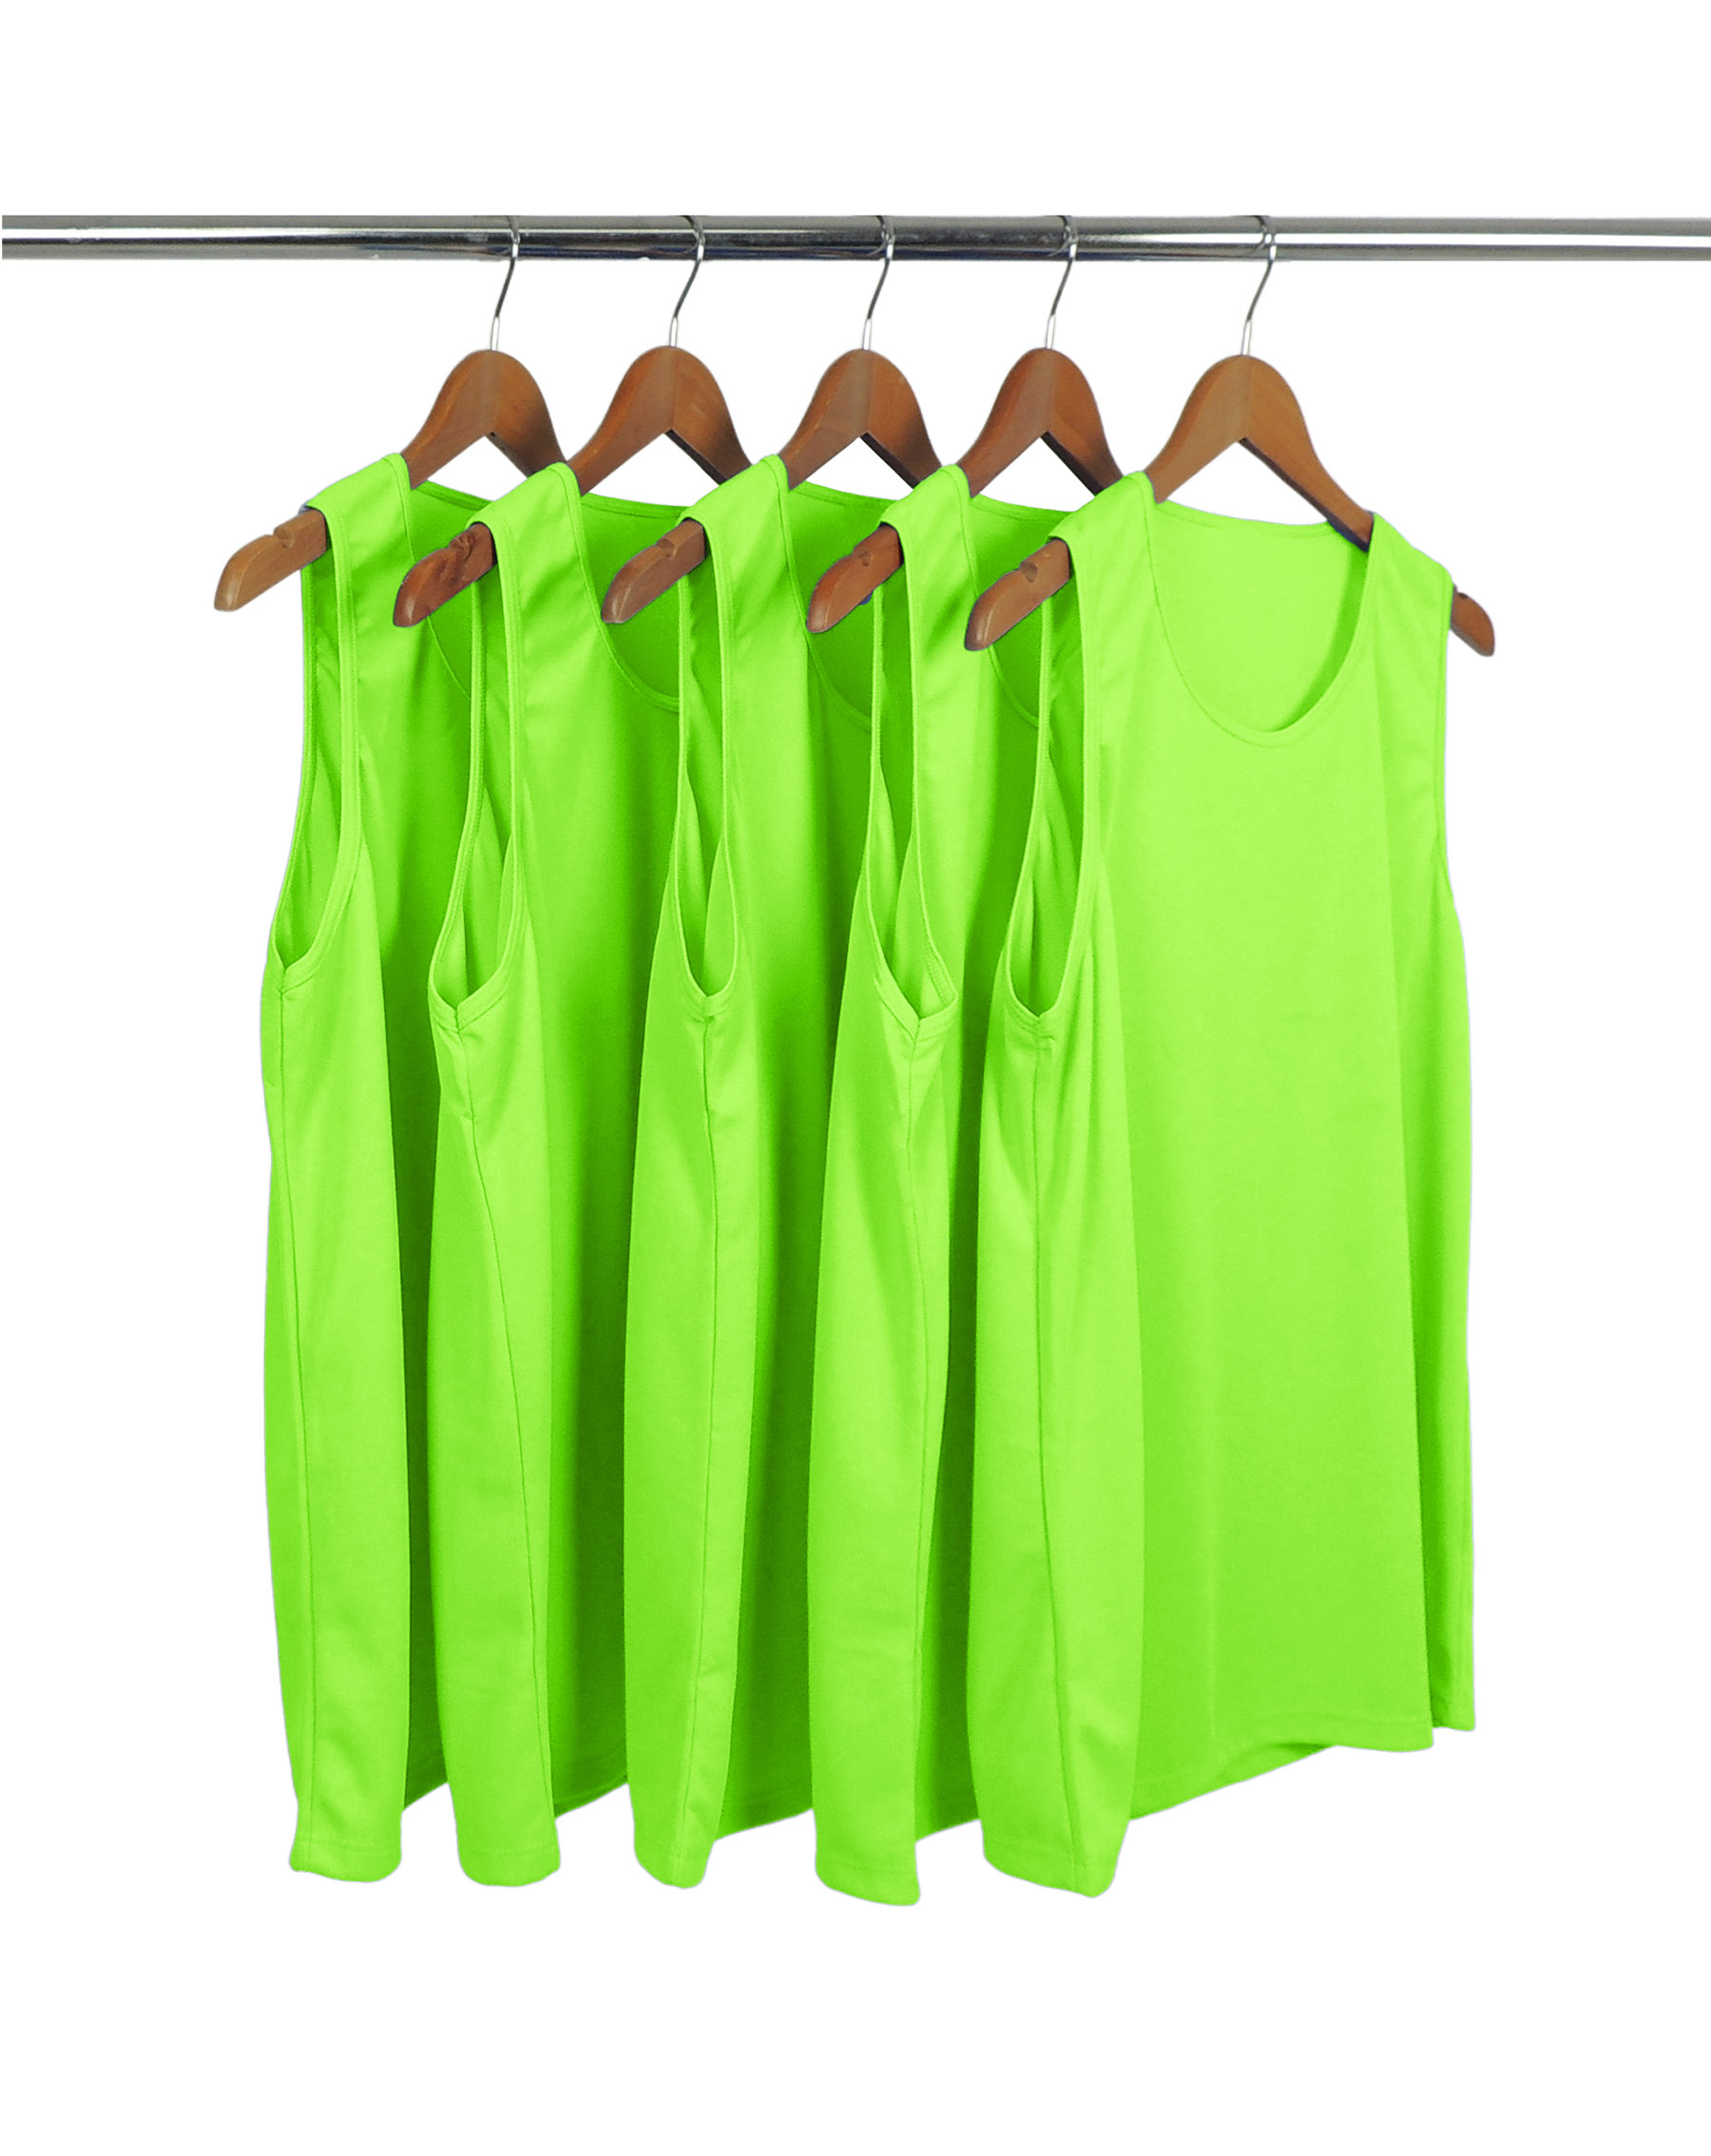 KIT 5 Regatas Dry Fit Verde Fluorescente Proteção UV 30+